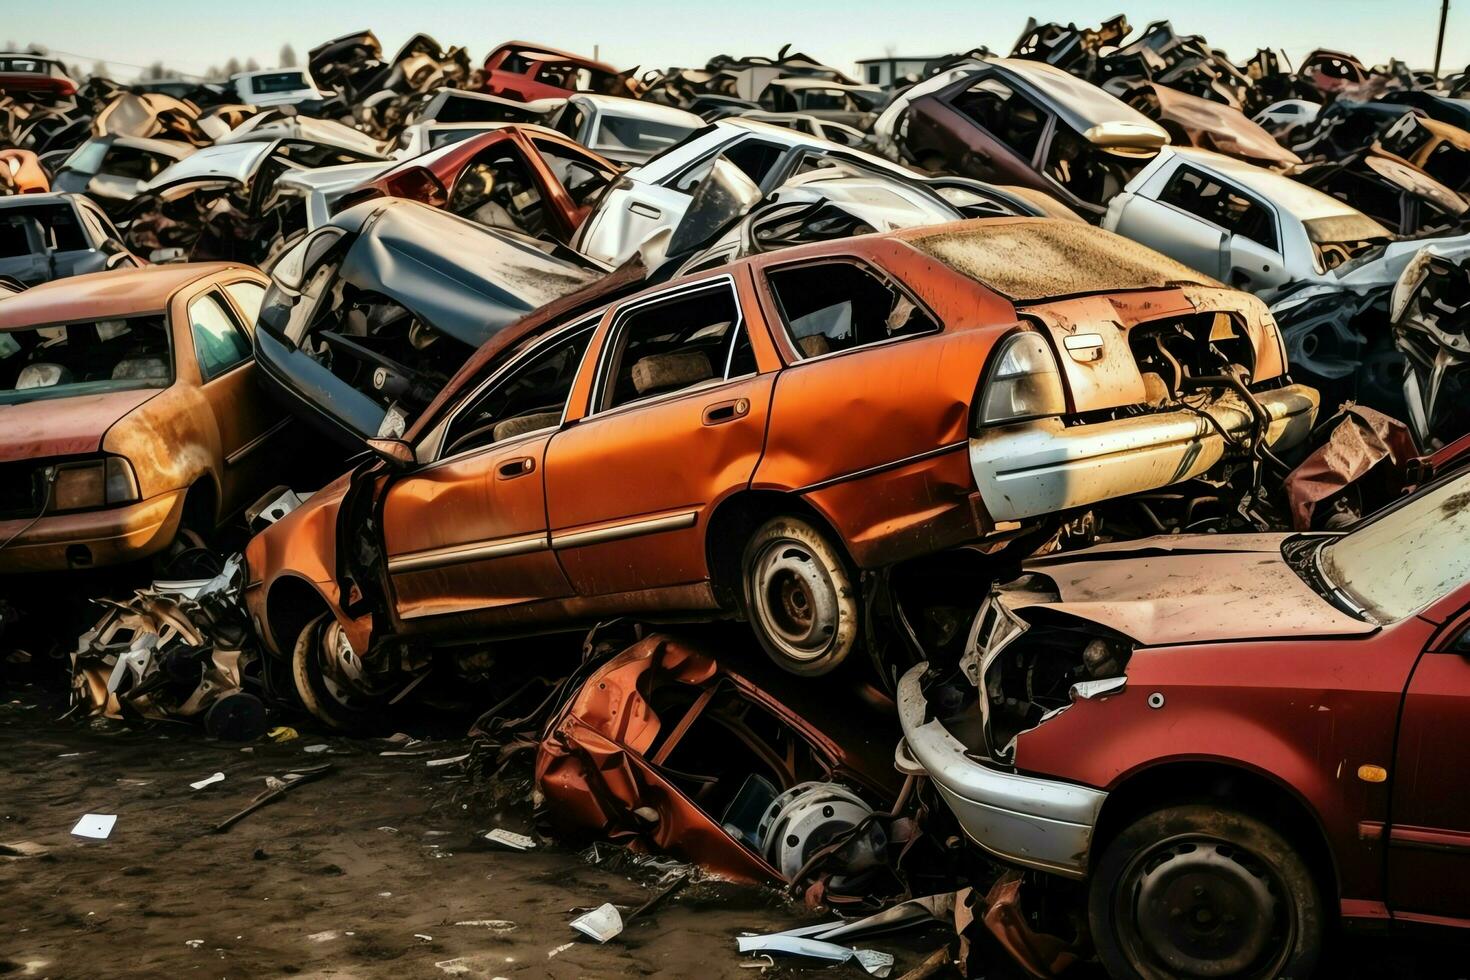 roesten oud rommel auto's met milieu verontreiniging in autokerkhof voor recyclen. verlaten auto verspilling concept door ai gegenereerd foto